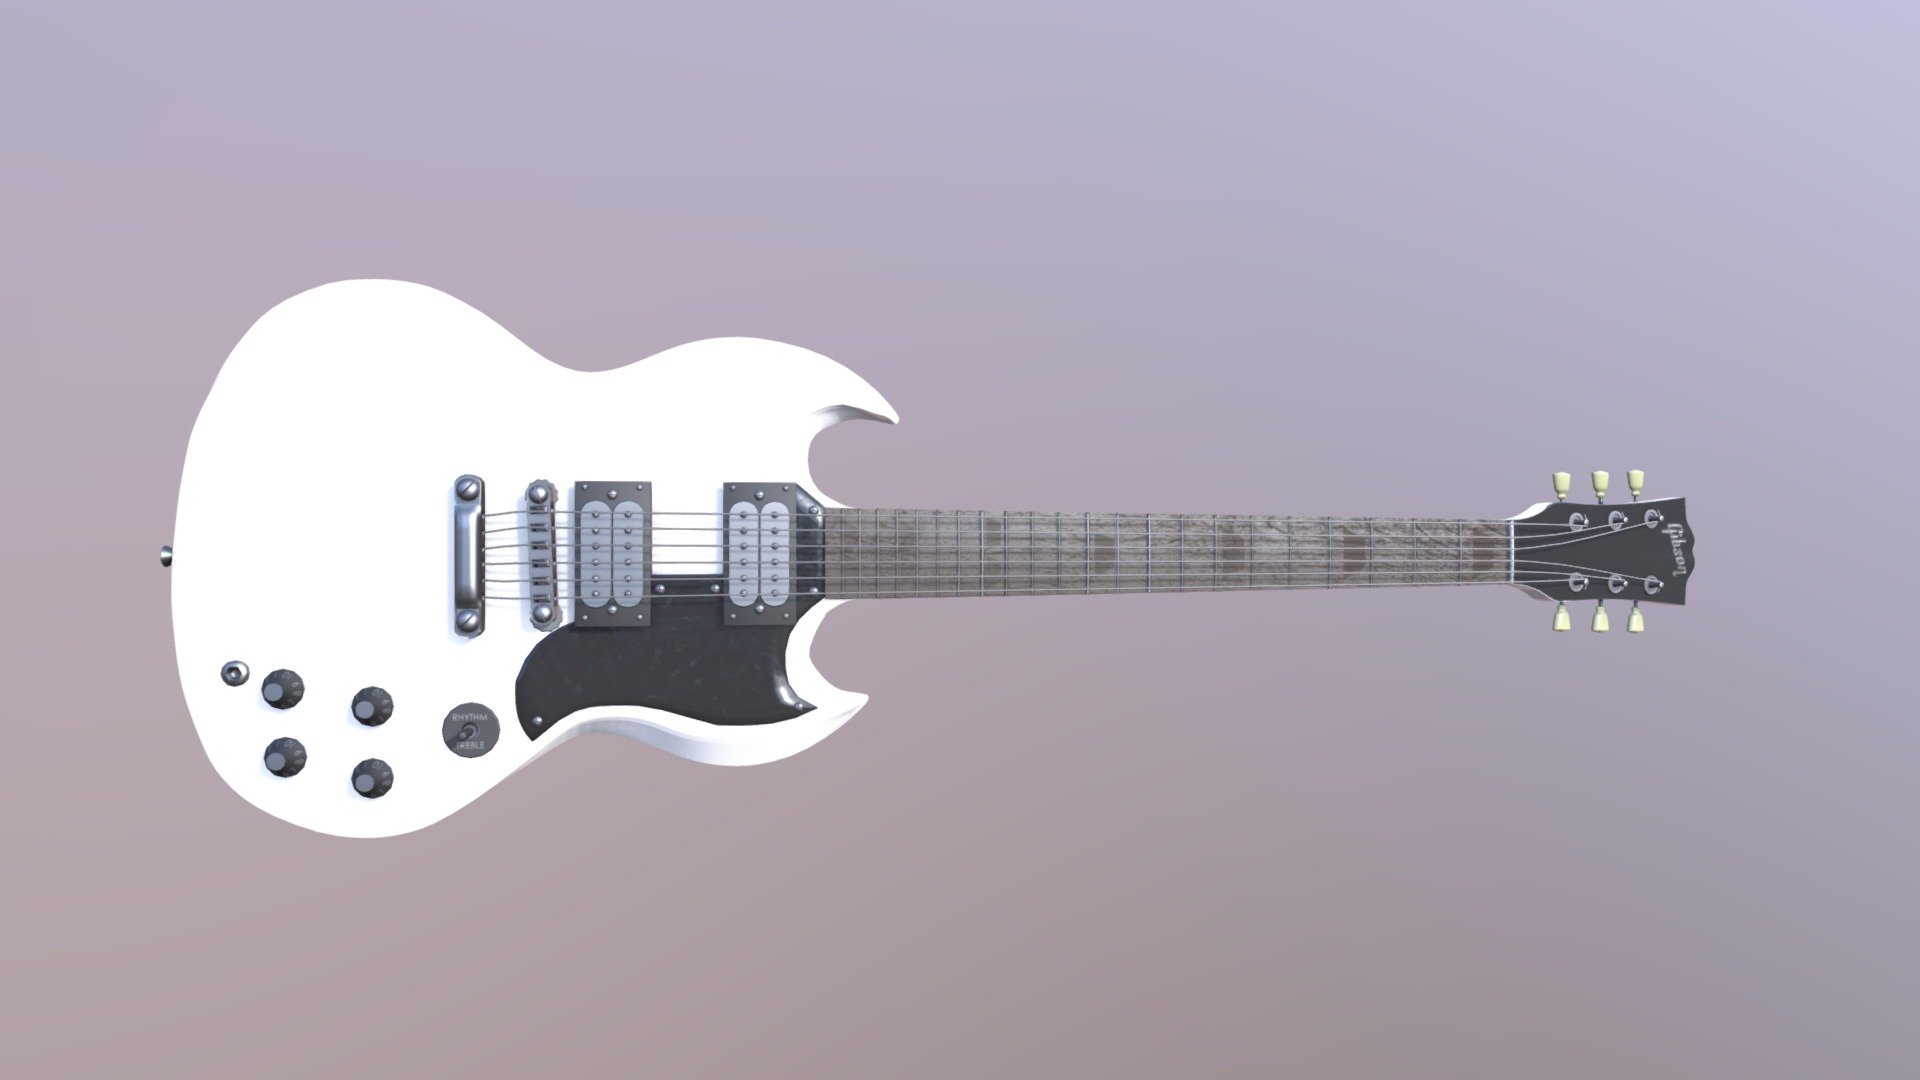 Gibson Electric Guitar - Base Design